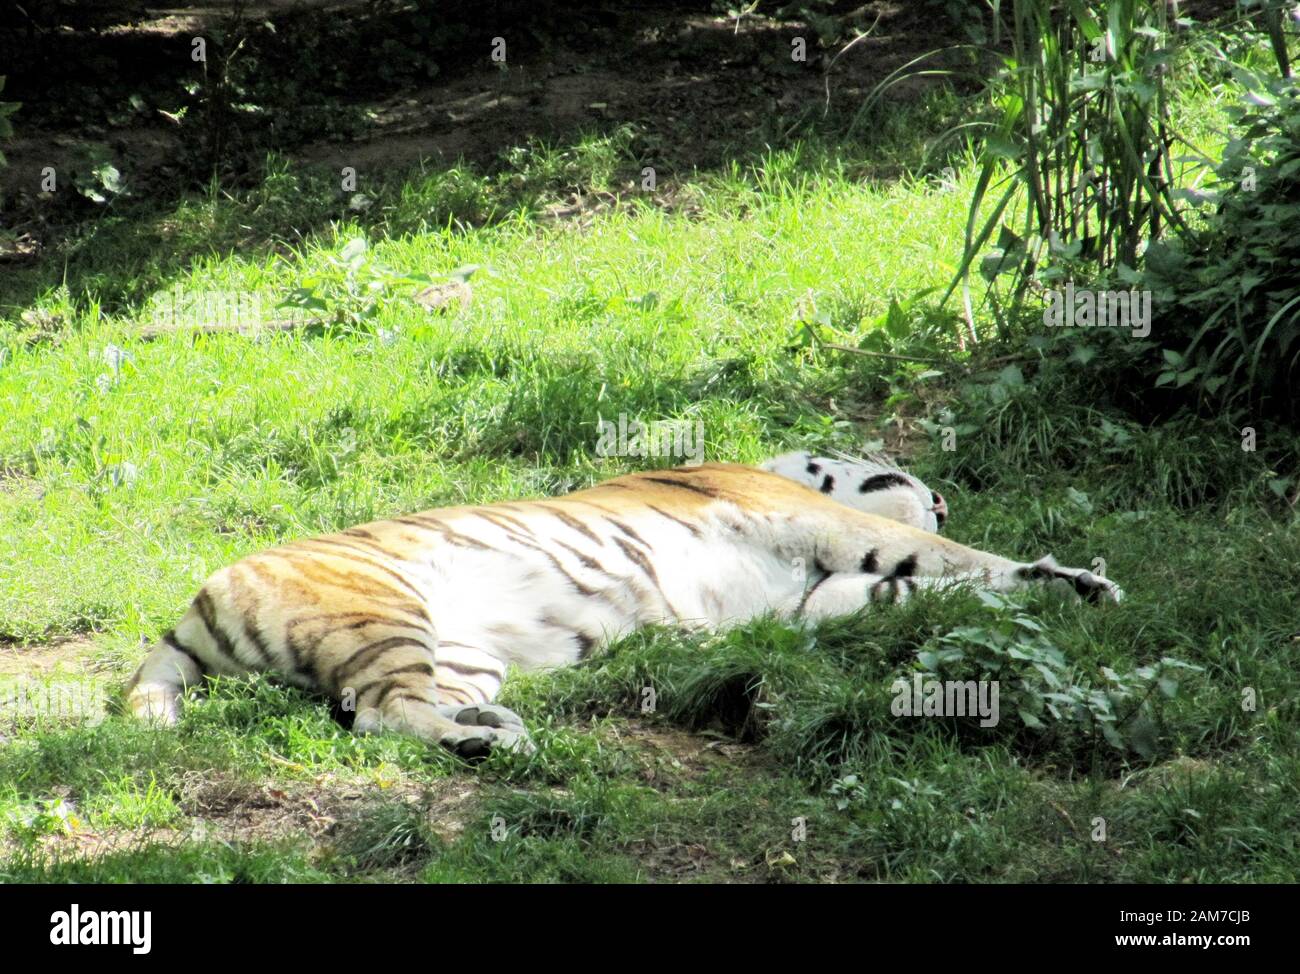 La tigre siberiana, Panthera tigris altaica, chiamata anche tigre di Amur o tigre di Ussuri, è una sottospecie della tigre e il più grande gatto vivente nel wo Foto Stock